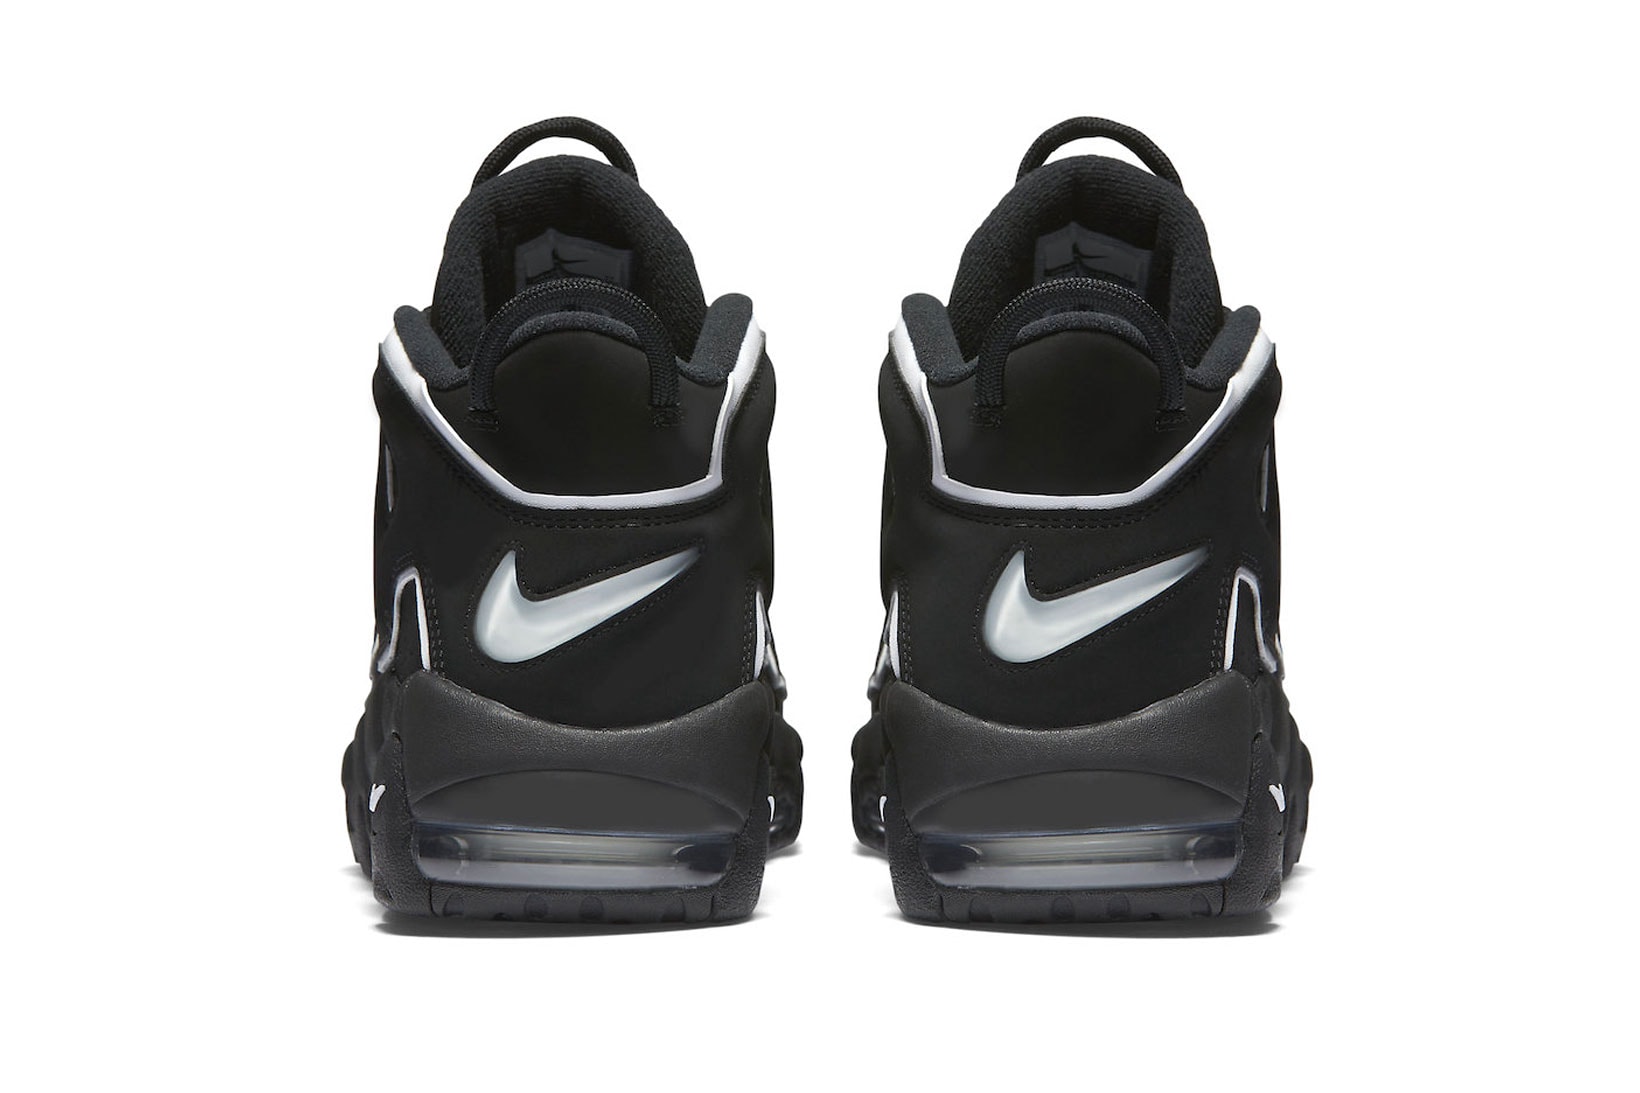 Nike Air More Uptempo "OG" Black White Re-Release Where to buy Info